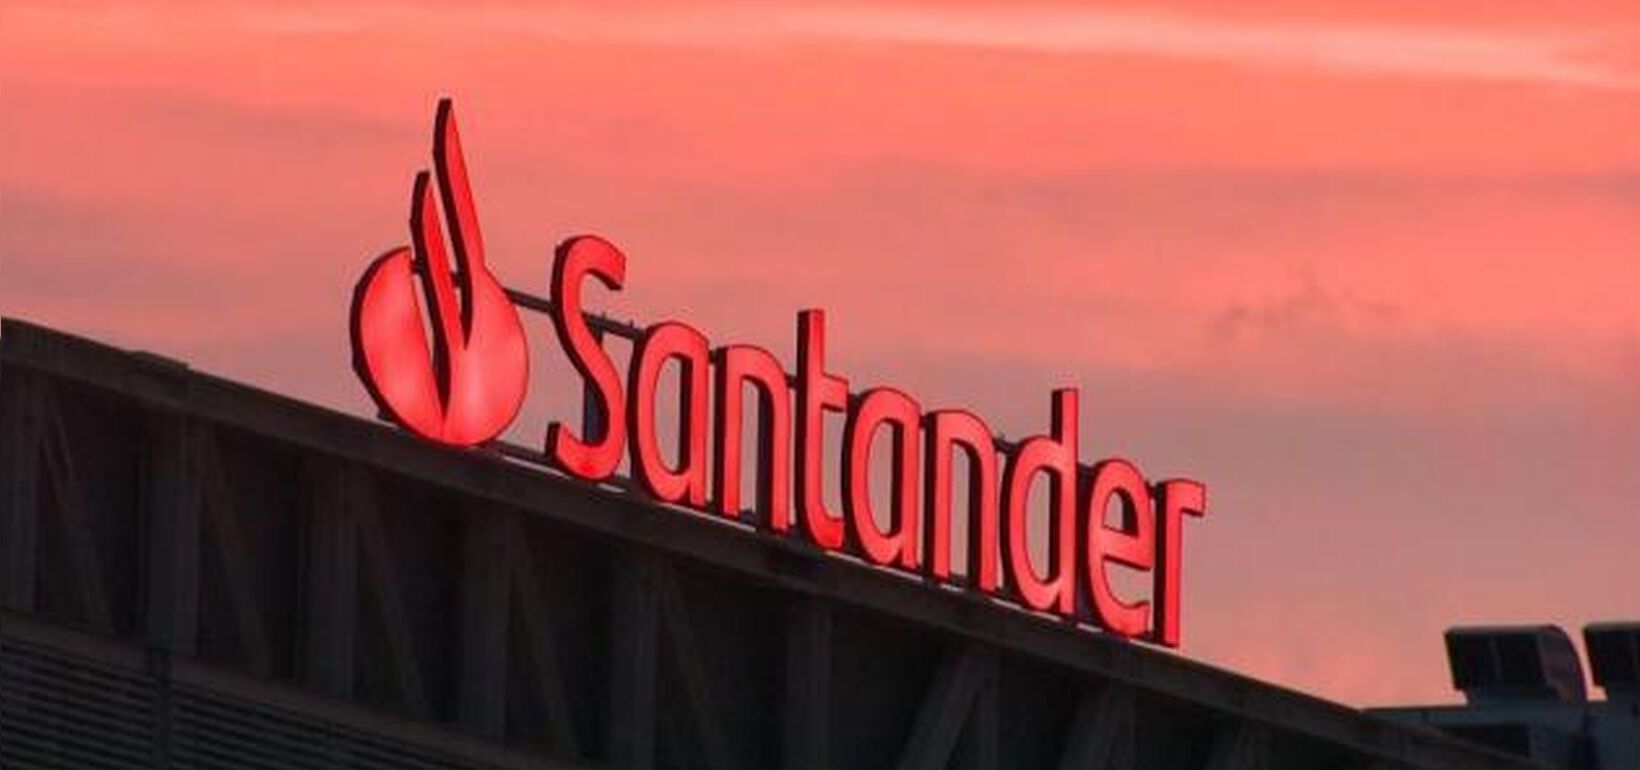 La fintech de Banco Santander sigue creciendo como uno de los mayores Unicornios españoles